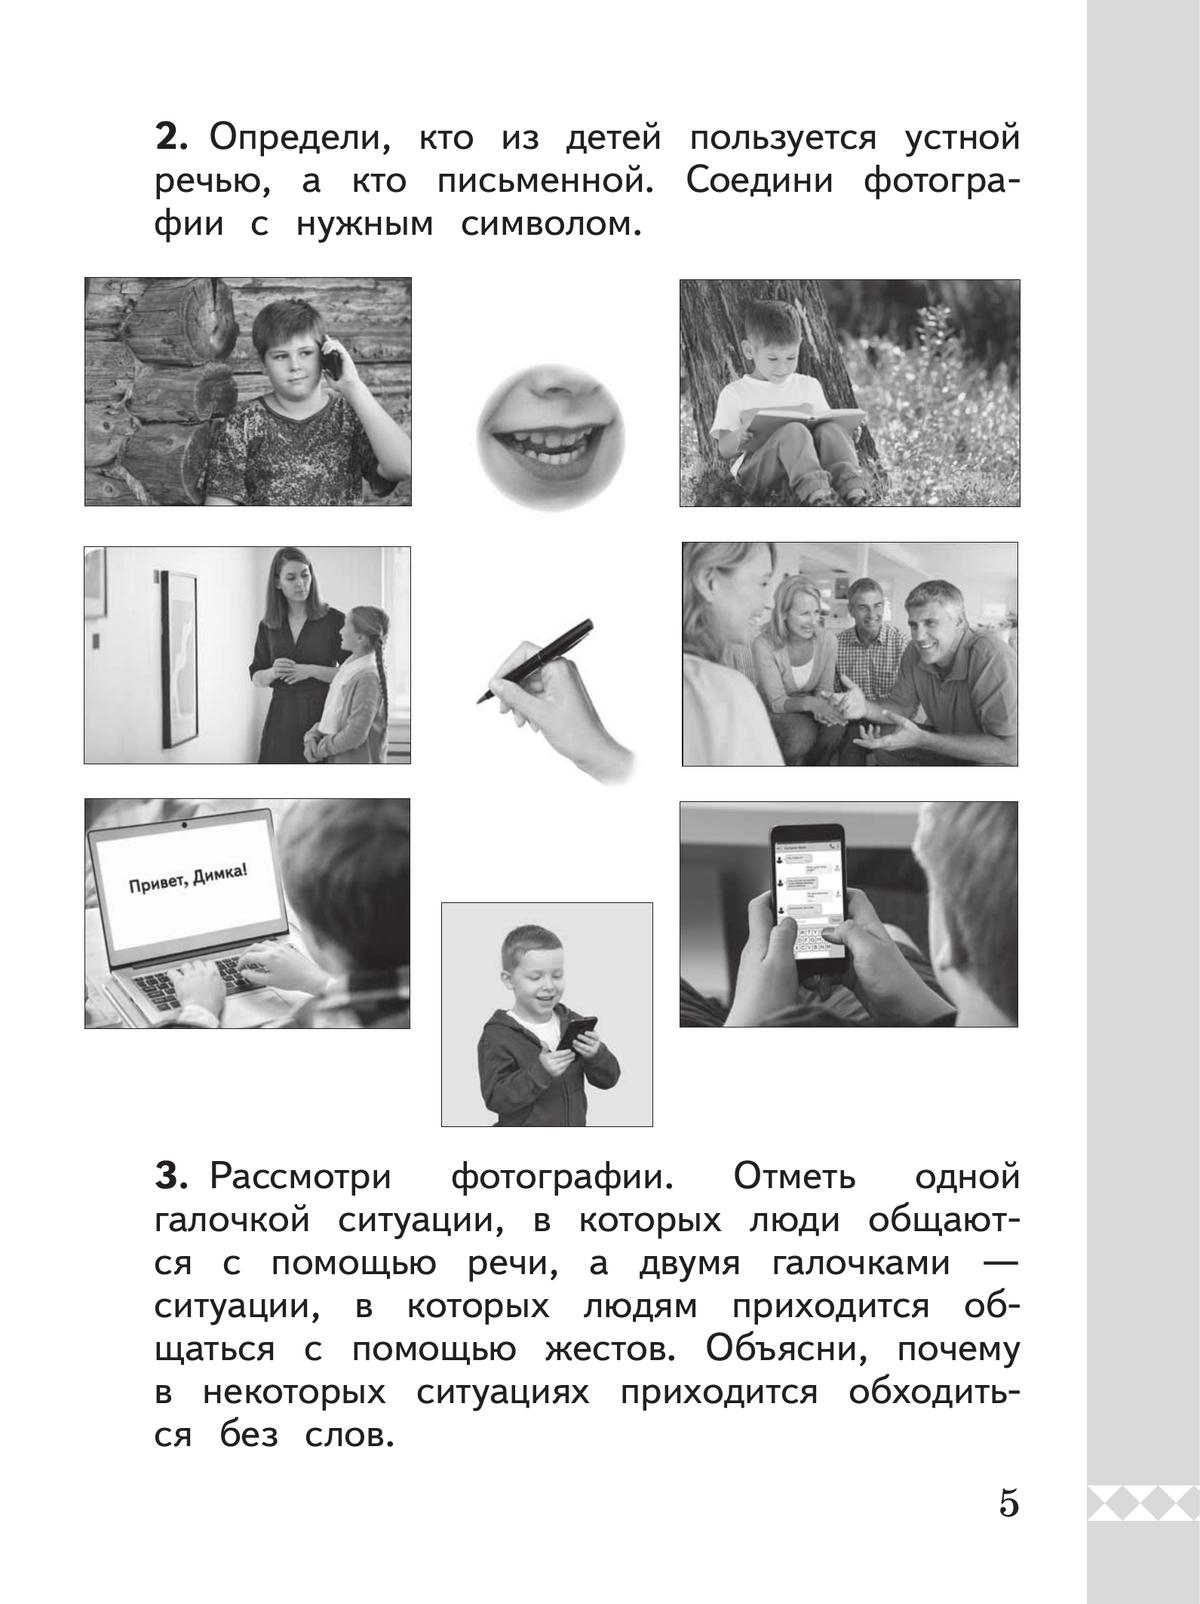 Русский родной язык. Практикум. 1 класс 5